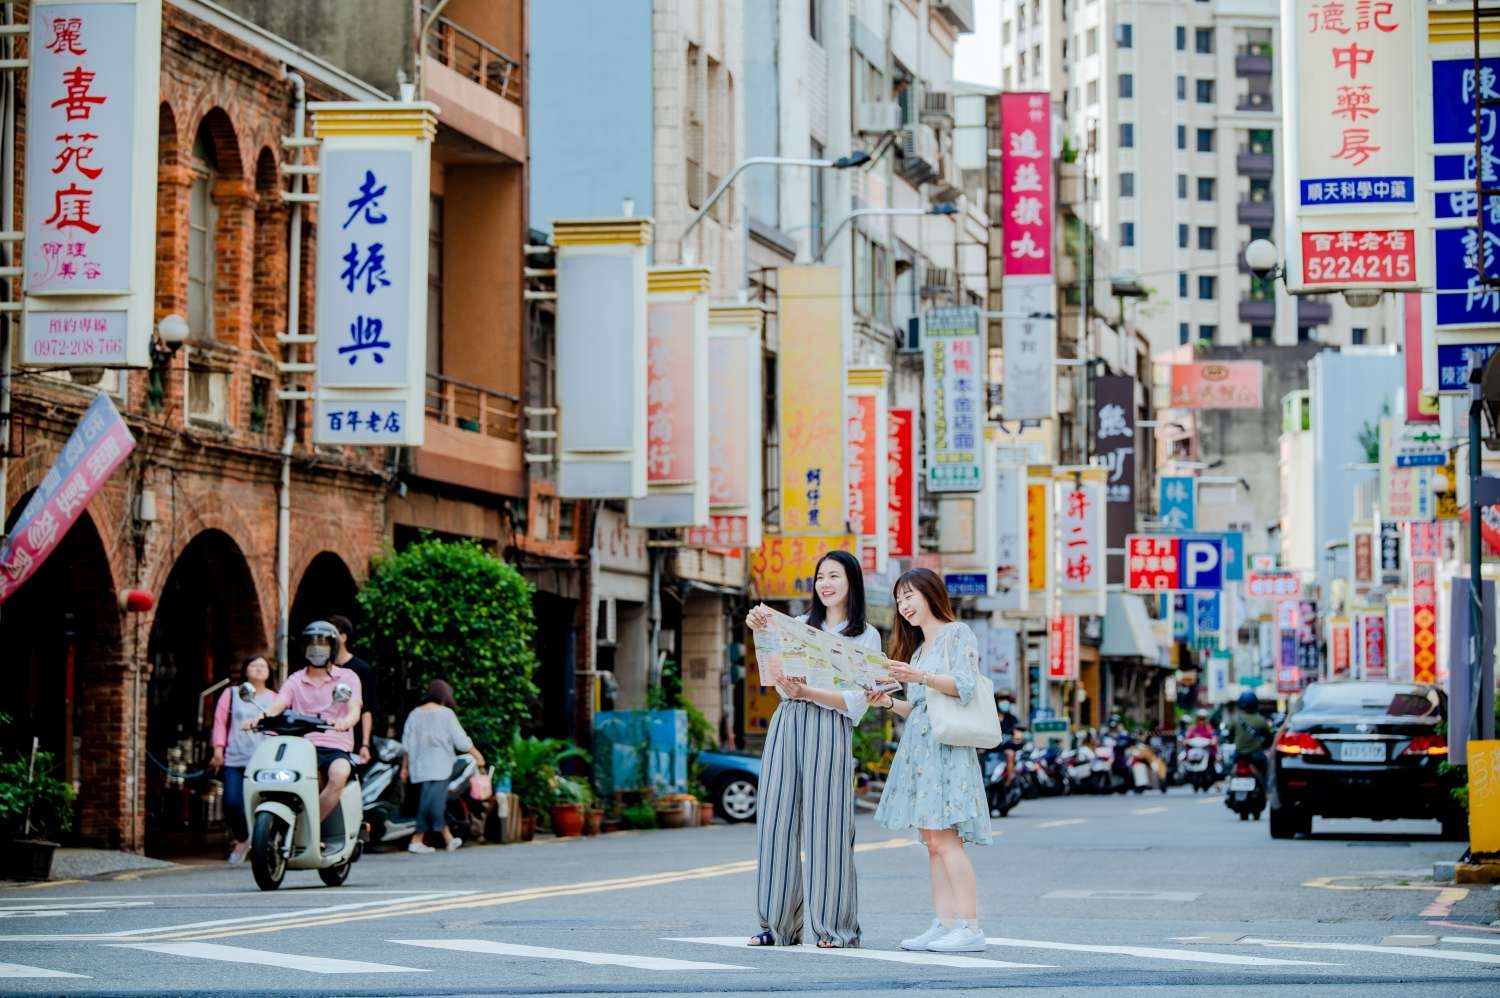 北門街曾是清代北臺灣一等繁華的商店街，0.7公里的街坊有著百年宮廟、古蹟、藥鋪及各式小吃店。